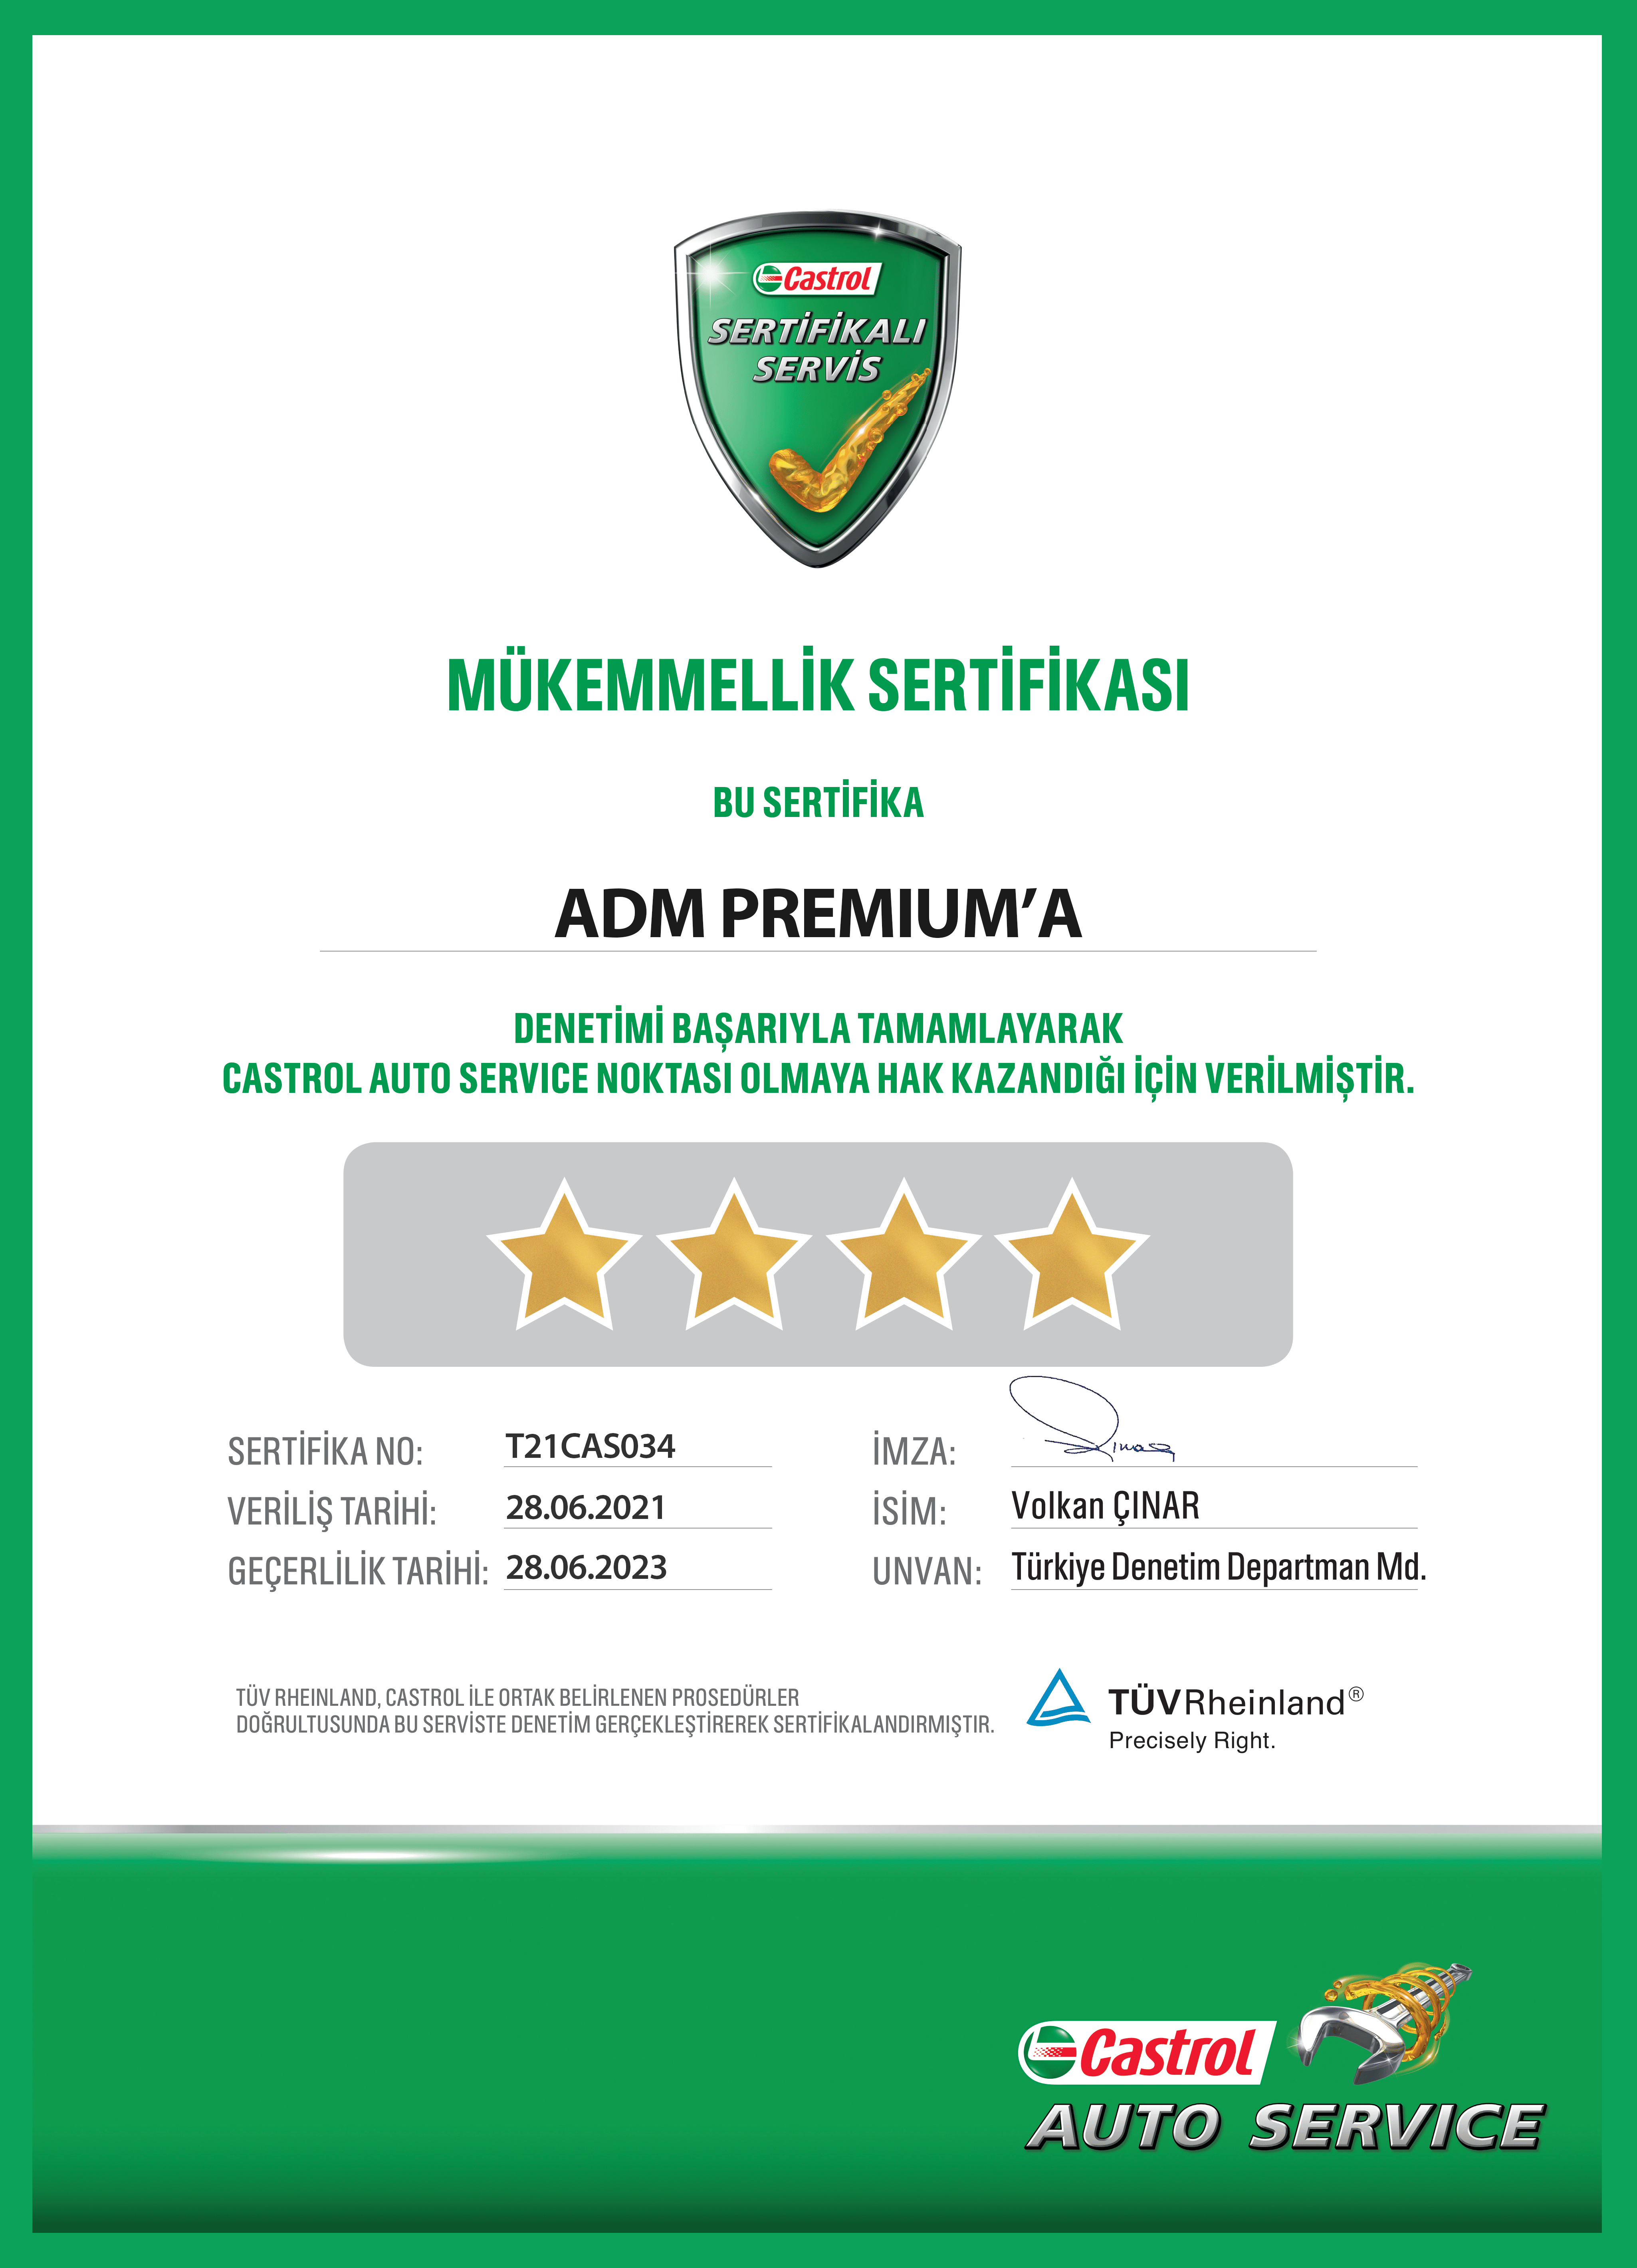 Adm Premium